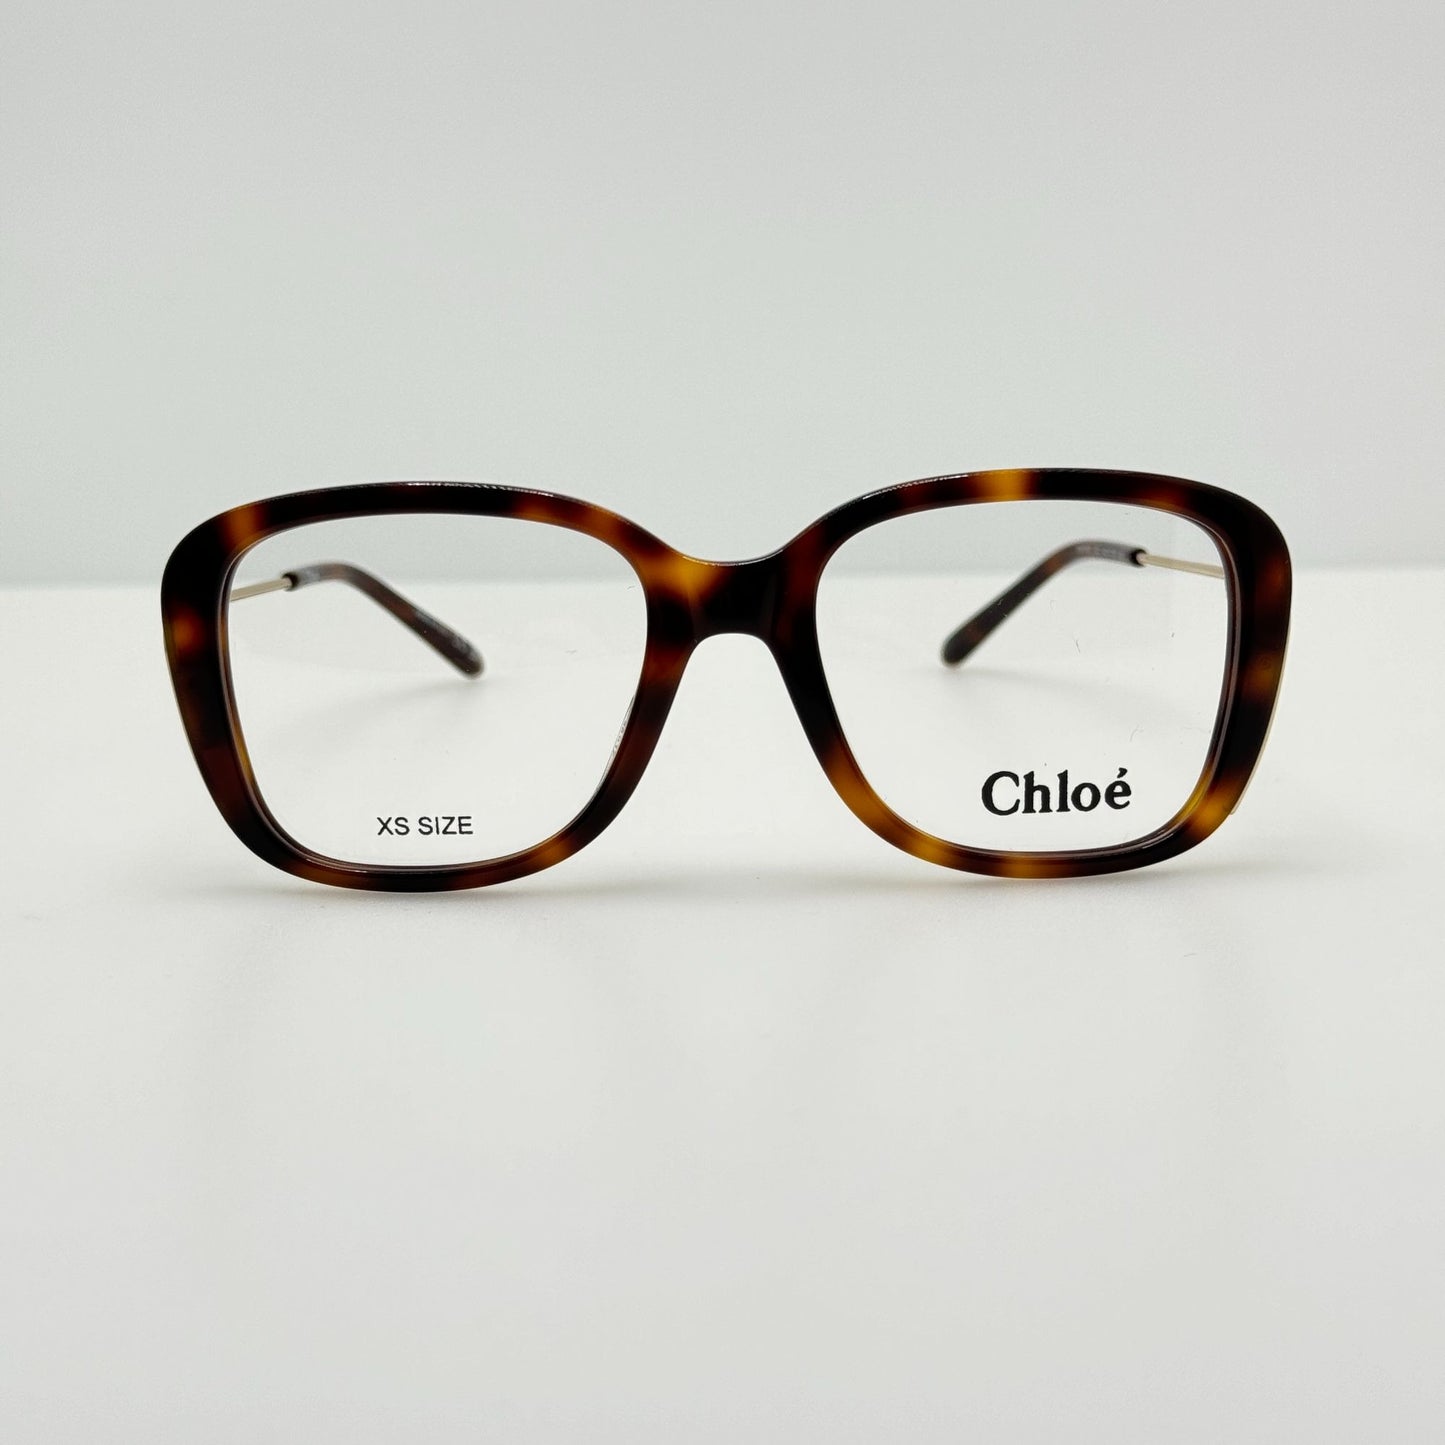 Chloe Eyeglasses Eye Glasses Frames CH0174O 002 48-17-135 Italy